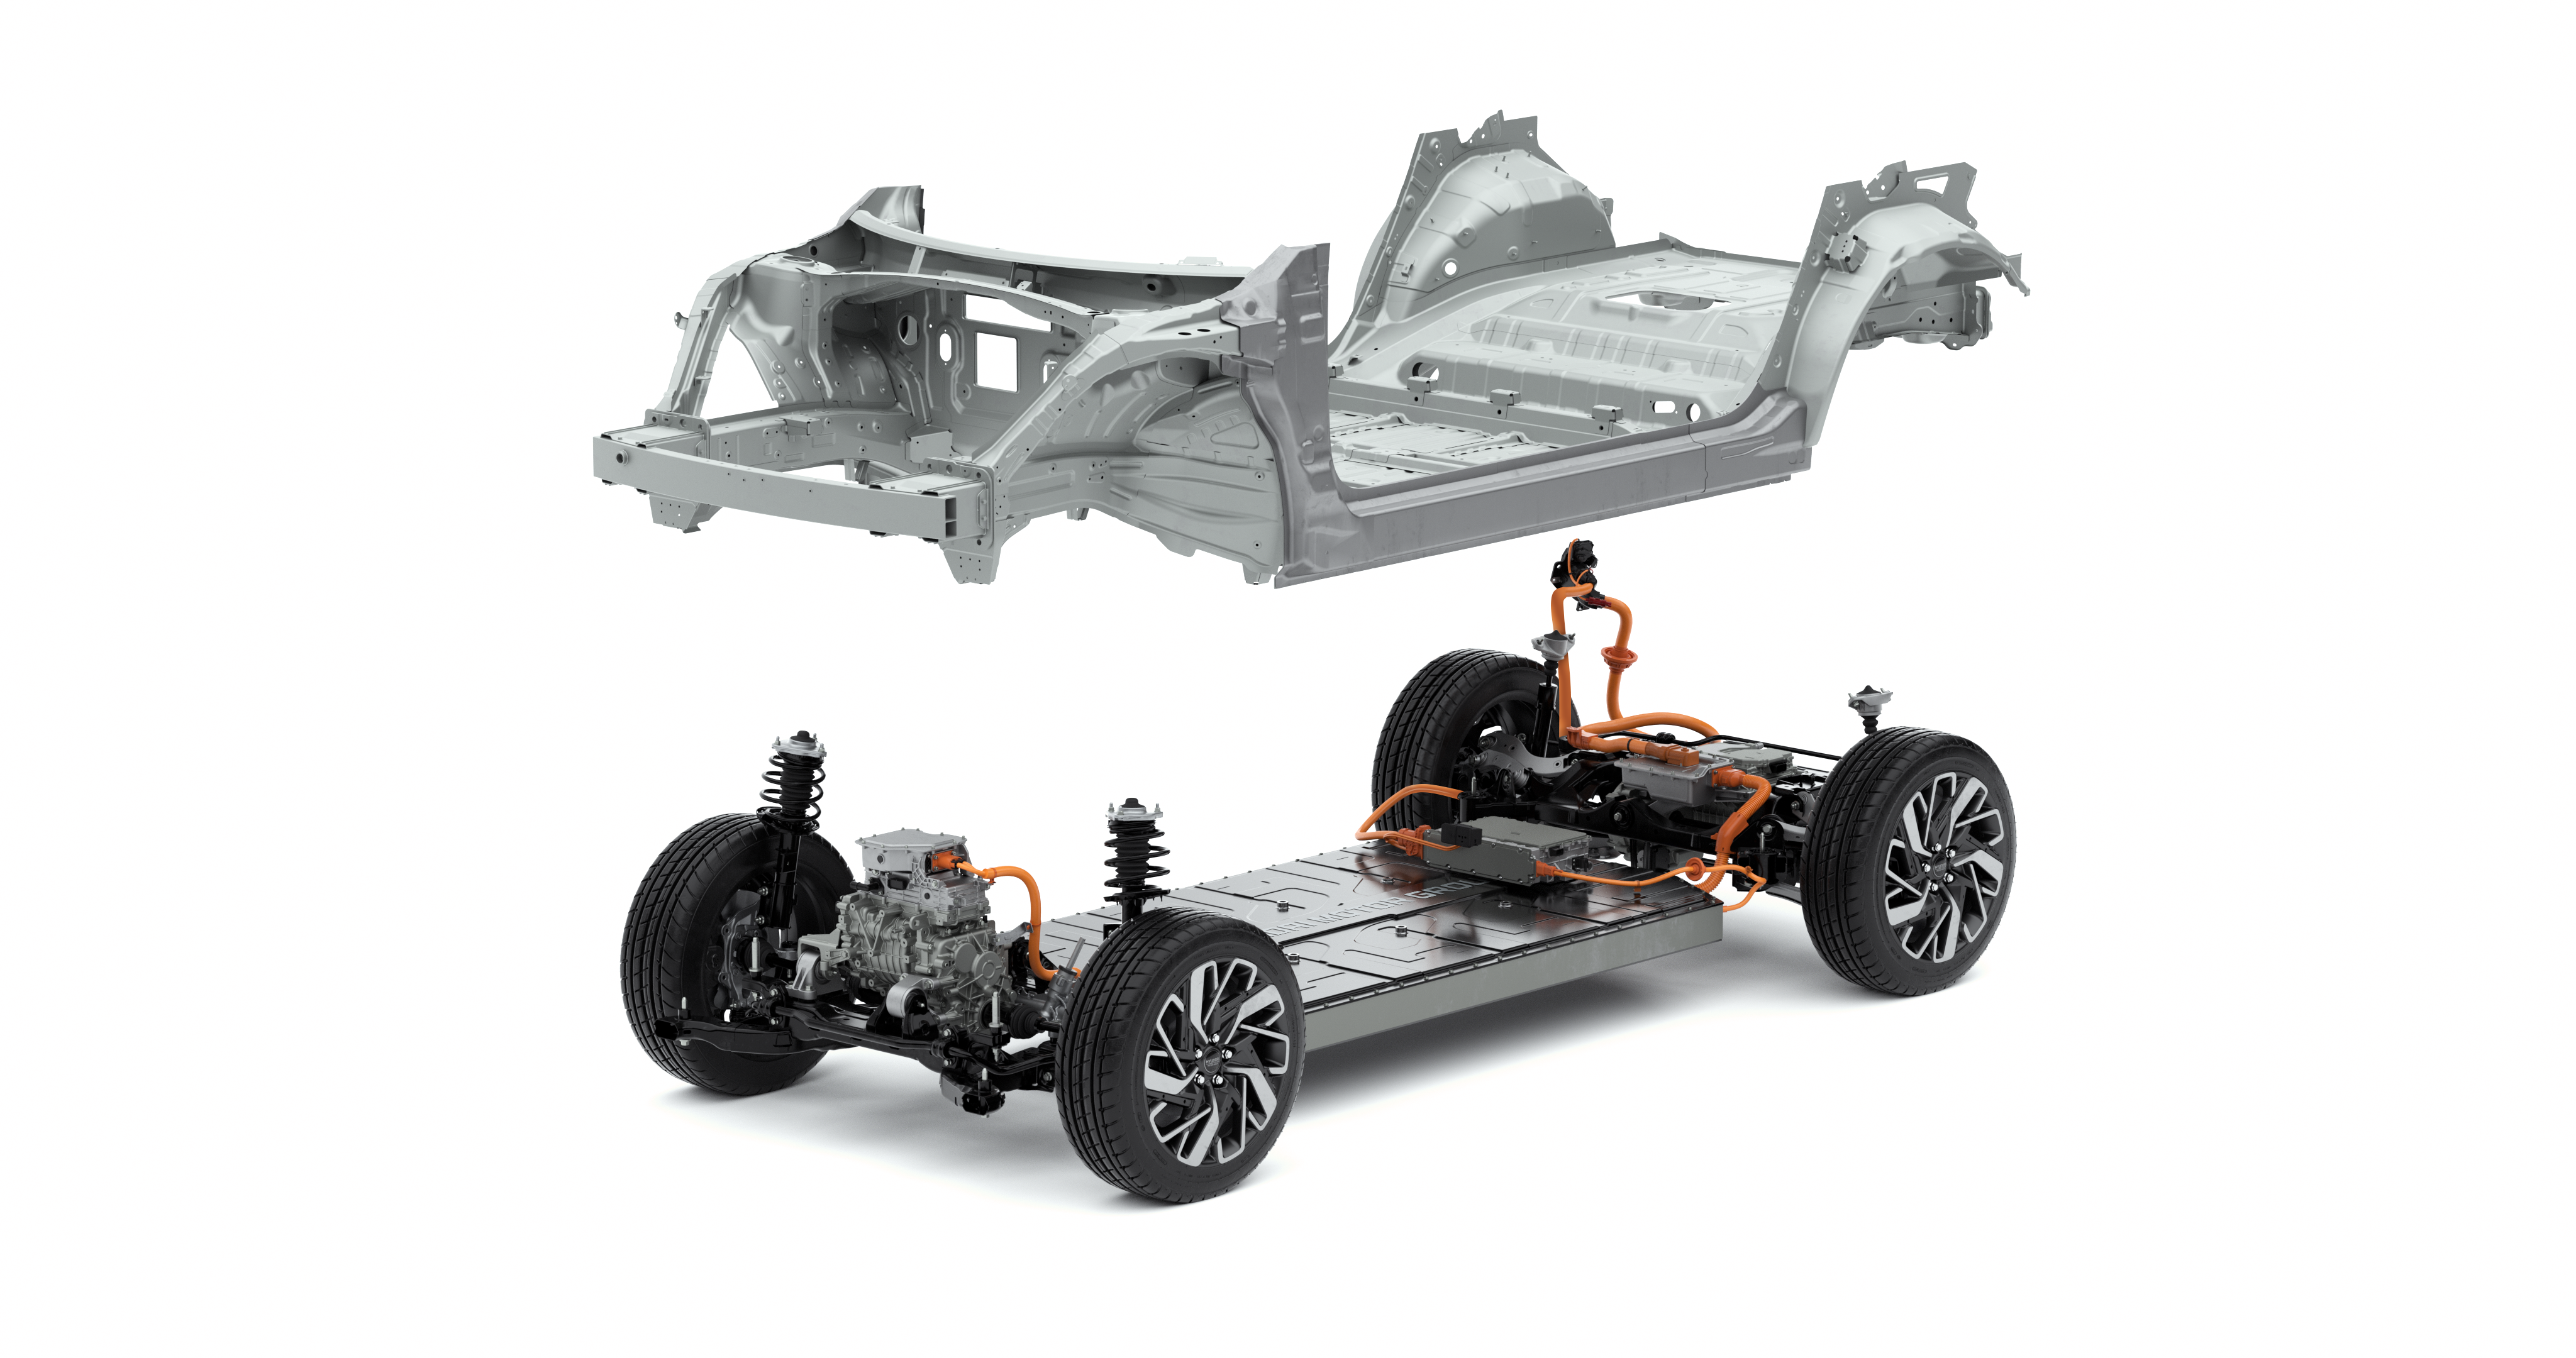 Platforma E-GMP s tenkou sadou baterií zajišťuje velkorysý vnitřní prostor, nízké těžiště a také velmi dobrou bezpečnost. (foto Hyundai)